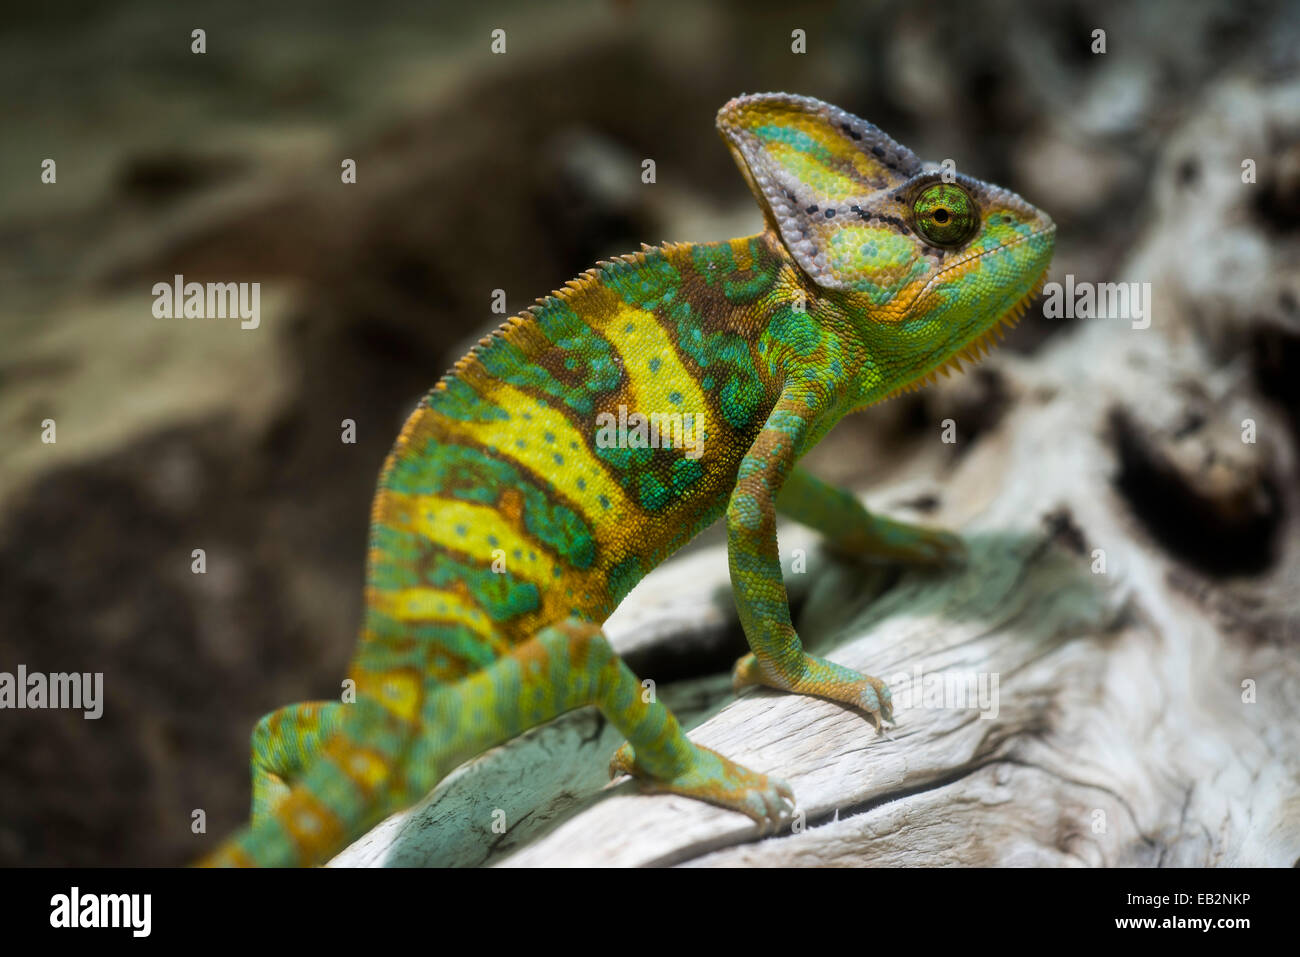 Yemen Chameleon or Veiled Chameleon (Chamaeleo calyptratus), captive Stock Photo